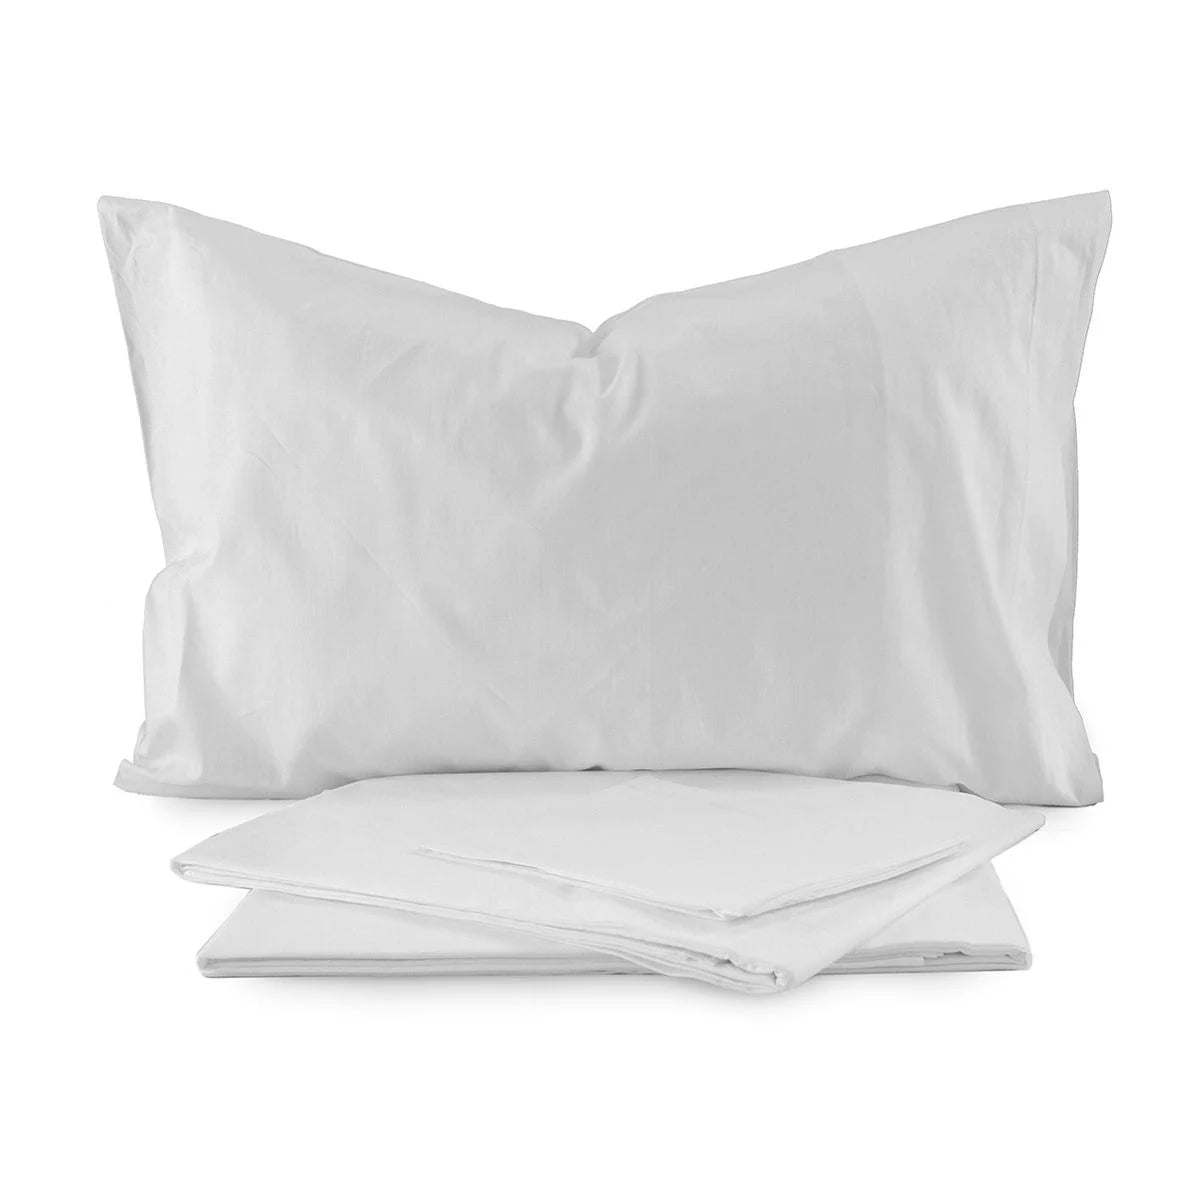 Completo lenzuola  letto singolo puro cotone Bianco